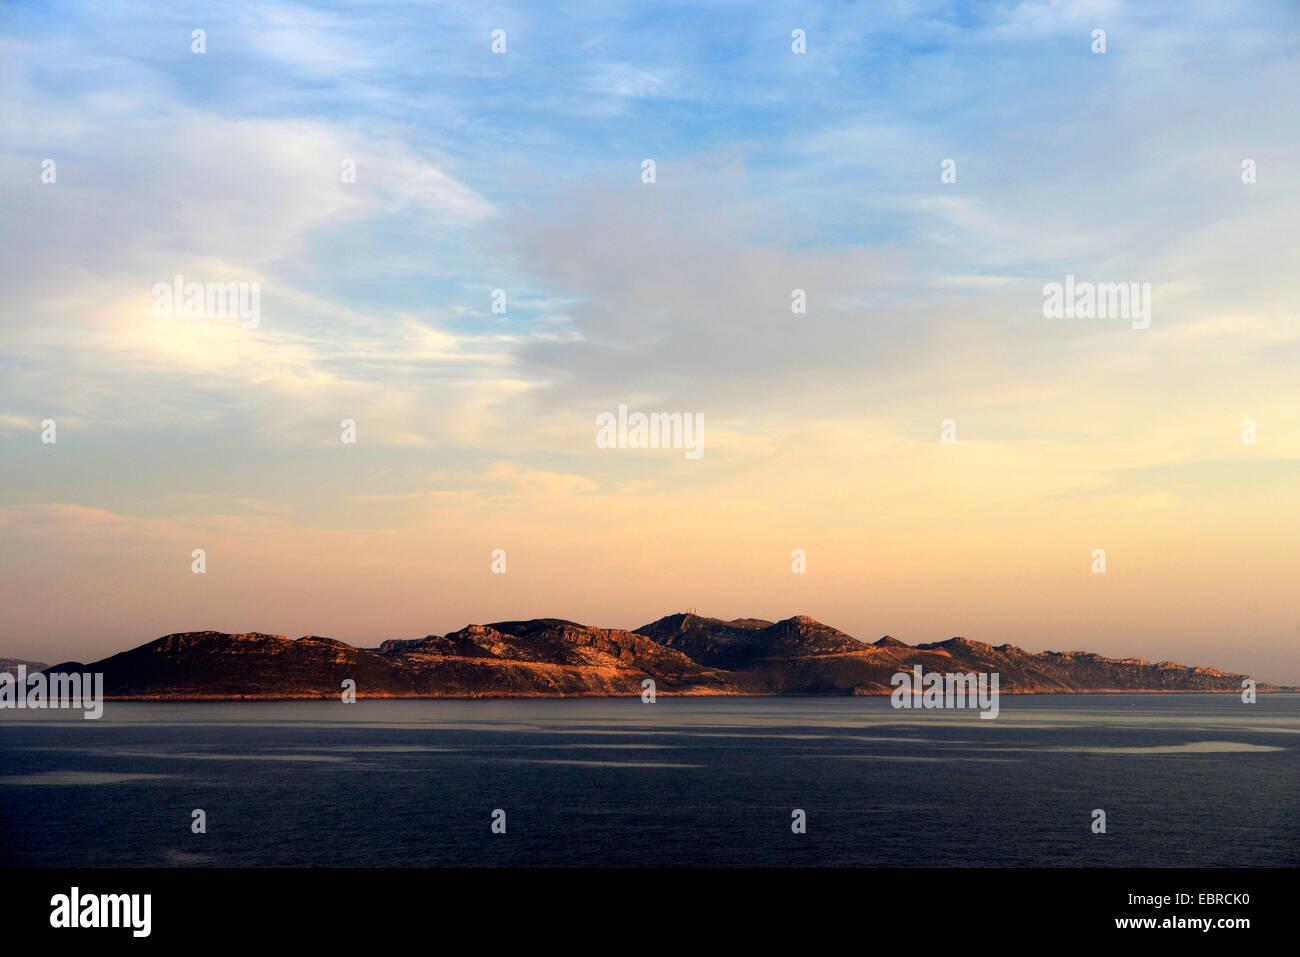 Isola greca Kastellorizo (Megisti) presso la costa turca nella luce della sera, Grecia, Lycia, KASTELLORIZO Foto Stock